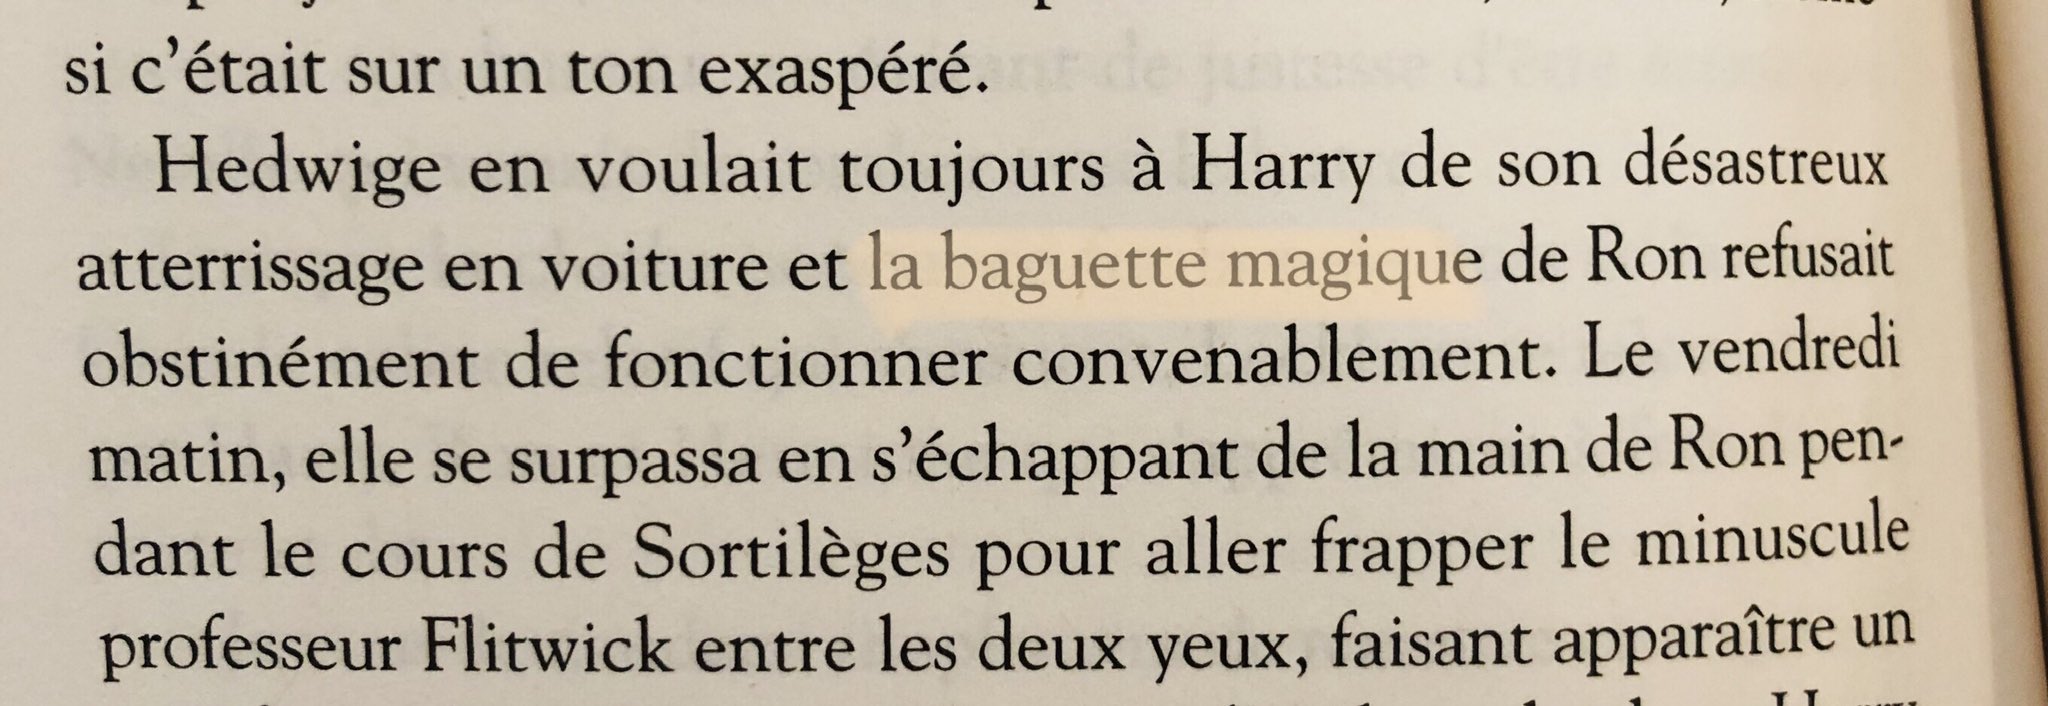 Harry Potter France on X: Ces bagues sont magnifiques.